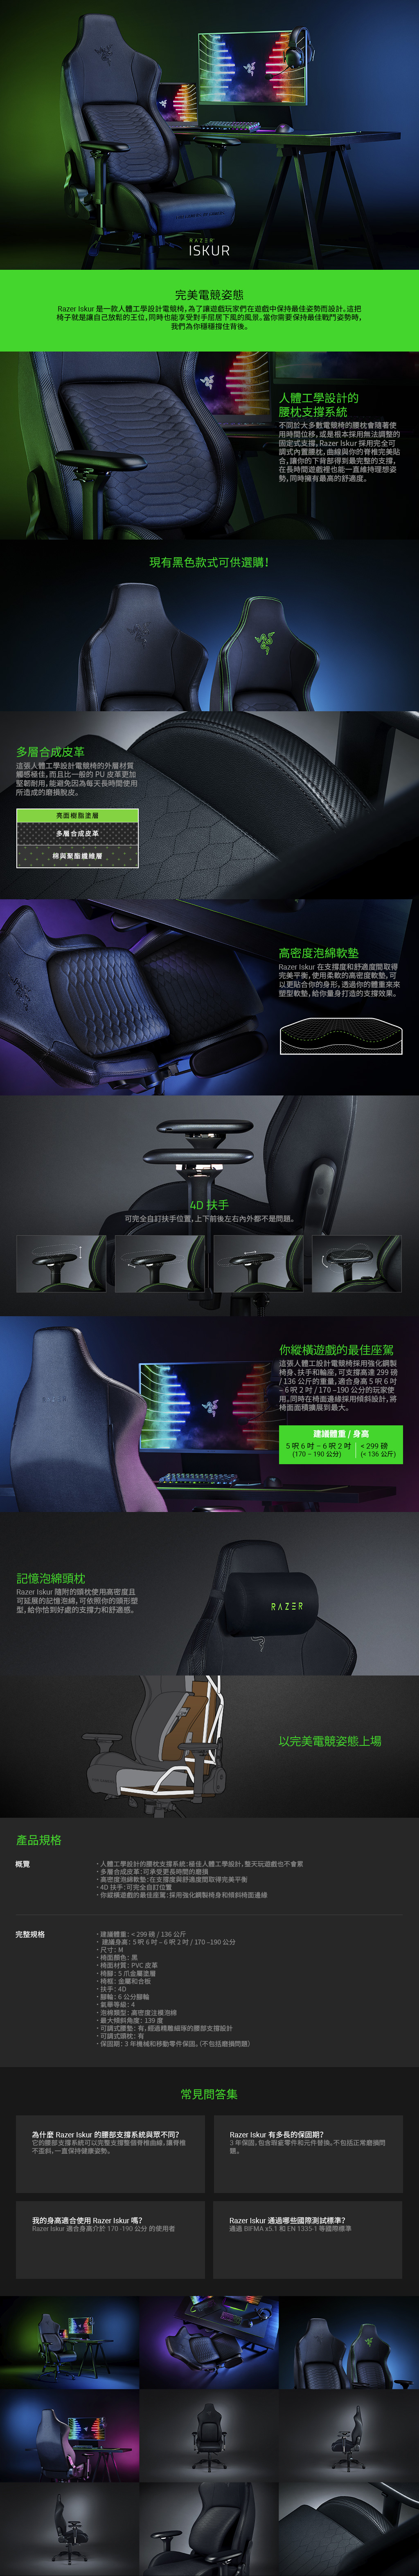 BY ISKUR完美電競姿態Razer Iskur 是一款人體工學設計電競為了讓遊戲玩家們在遊戲中保持最佳姿勢而設計。這把子就是讓自己放鬆的王位,同時也能享受對手屈居下風的風景。當你需要保持最佳戰鬥姿勢時,我們為你穩穩撐住背後。多層合成皮革這張人體工學設計電競椅的外層材質觸感極佳,而且比一般的PU皮革更加堅韌耐用,能避免因為每天長時間使用所造成的磨損脫皮。亮面樹脂塗層多層合成皮革棉與聚酯纖維層現有黑色款式可供選購!人體工學設計的腰系統不同於大多數電競椅的腰枕會隨著使用時間位移,或是根本採用無法調整的固定式支撐,Razer Iskur 採用完全可調式內置腰枕, 曲線與你的脊椎完美貼合,讓你的下背部得到最完整的支撑,在長時間遊戲裡也能一直維持理想姿勢,同時擁有最高的舒適度。高密度泡綿軟墊Razer Iskur 在支撐度和舒適度間取得完美平衡,使用柔軟的高密度軟墊,可以更貼合你的身形,透過你的體重來來塑型軟墊,給你量身打造的支撐效果。4D 扶手可完全自訂扶手位置,上下前後左右內外都不是問題。RAZER你縱橫遊戲的最佳座駕這張人體工設計電競椅採用強化鋼製椅身扶手和輪座,可支撐高達299 磅/136公斤的重量,適合身高5呎6呎2吋/170-190公分的玩家使用。同時在椅面邊緣採用傾斜設計,將椅面面積擴展到最大。記憶泡綿頭枕Razer Iskur 隨附的頭枕使用高密度且可延展的記憶泡綿,可依照你的頭形塑型,給你恰到好處的支撐力和舒適感。FOR GAMERS建議體重/身高5呎6吋-6呎2吋(170-190公分)299磅(136公斤)RAZER以完美電競姿態上場產品規格概覽人體工學設計的腰枕支撐系統:極佳人體工學設計,整天玩遊戲也不會累多層合成皮革:可承受更長時間的磨損高密度泡綿軟墊:在支撐度與舒適度間取得完美平衡4D 扶手:可完全自訂位置你縱橫遊戲的最佳座駕:採用強化鋼製椅身和傾斜椅面邊緣完整規格 建議體重:  299 磅 / 136 公斤建議身高:5呎6吋-6呎2吋/170-190 公分尺寸:M椅面顏色:黑椅面材質:PVC皮革椅腳:5爪金屬塗層椅框:金屬和合板扶手:4D腳輪:6公分腳輪氣等級:4·泡棉類型:高密度注模泡棉·最大傾斜角度:139度可調式腰墊:有,經過精雕細琢的腰部支撐設計可調式頭枕:有·保固期:3年機械和移動零件保固。(不包括磨損問題)常見問答集為什麼 Razer Iskur 的腰部支撐系統與眾不同?它的腰部支撐系統可以完整支撐整個脊椎曲線,讓脊椎不歪斜,一直保持健康姿勢。Razer Iskur 有多長的保固期?3年保固,包含瑕疵零件和元件替換。不包括正常磨損問題。我的身高適合使用 Razer Iskur嗎?Razer Iskur 適合身高介於170-190 公分 的使用者Razer Iskur 通過哪些國際測試標準?通過 BIFMA x5.1 和EN 1335-1 等國際標準